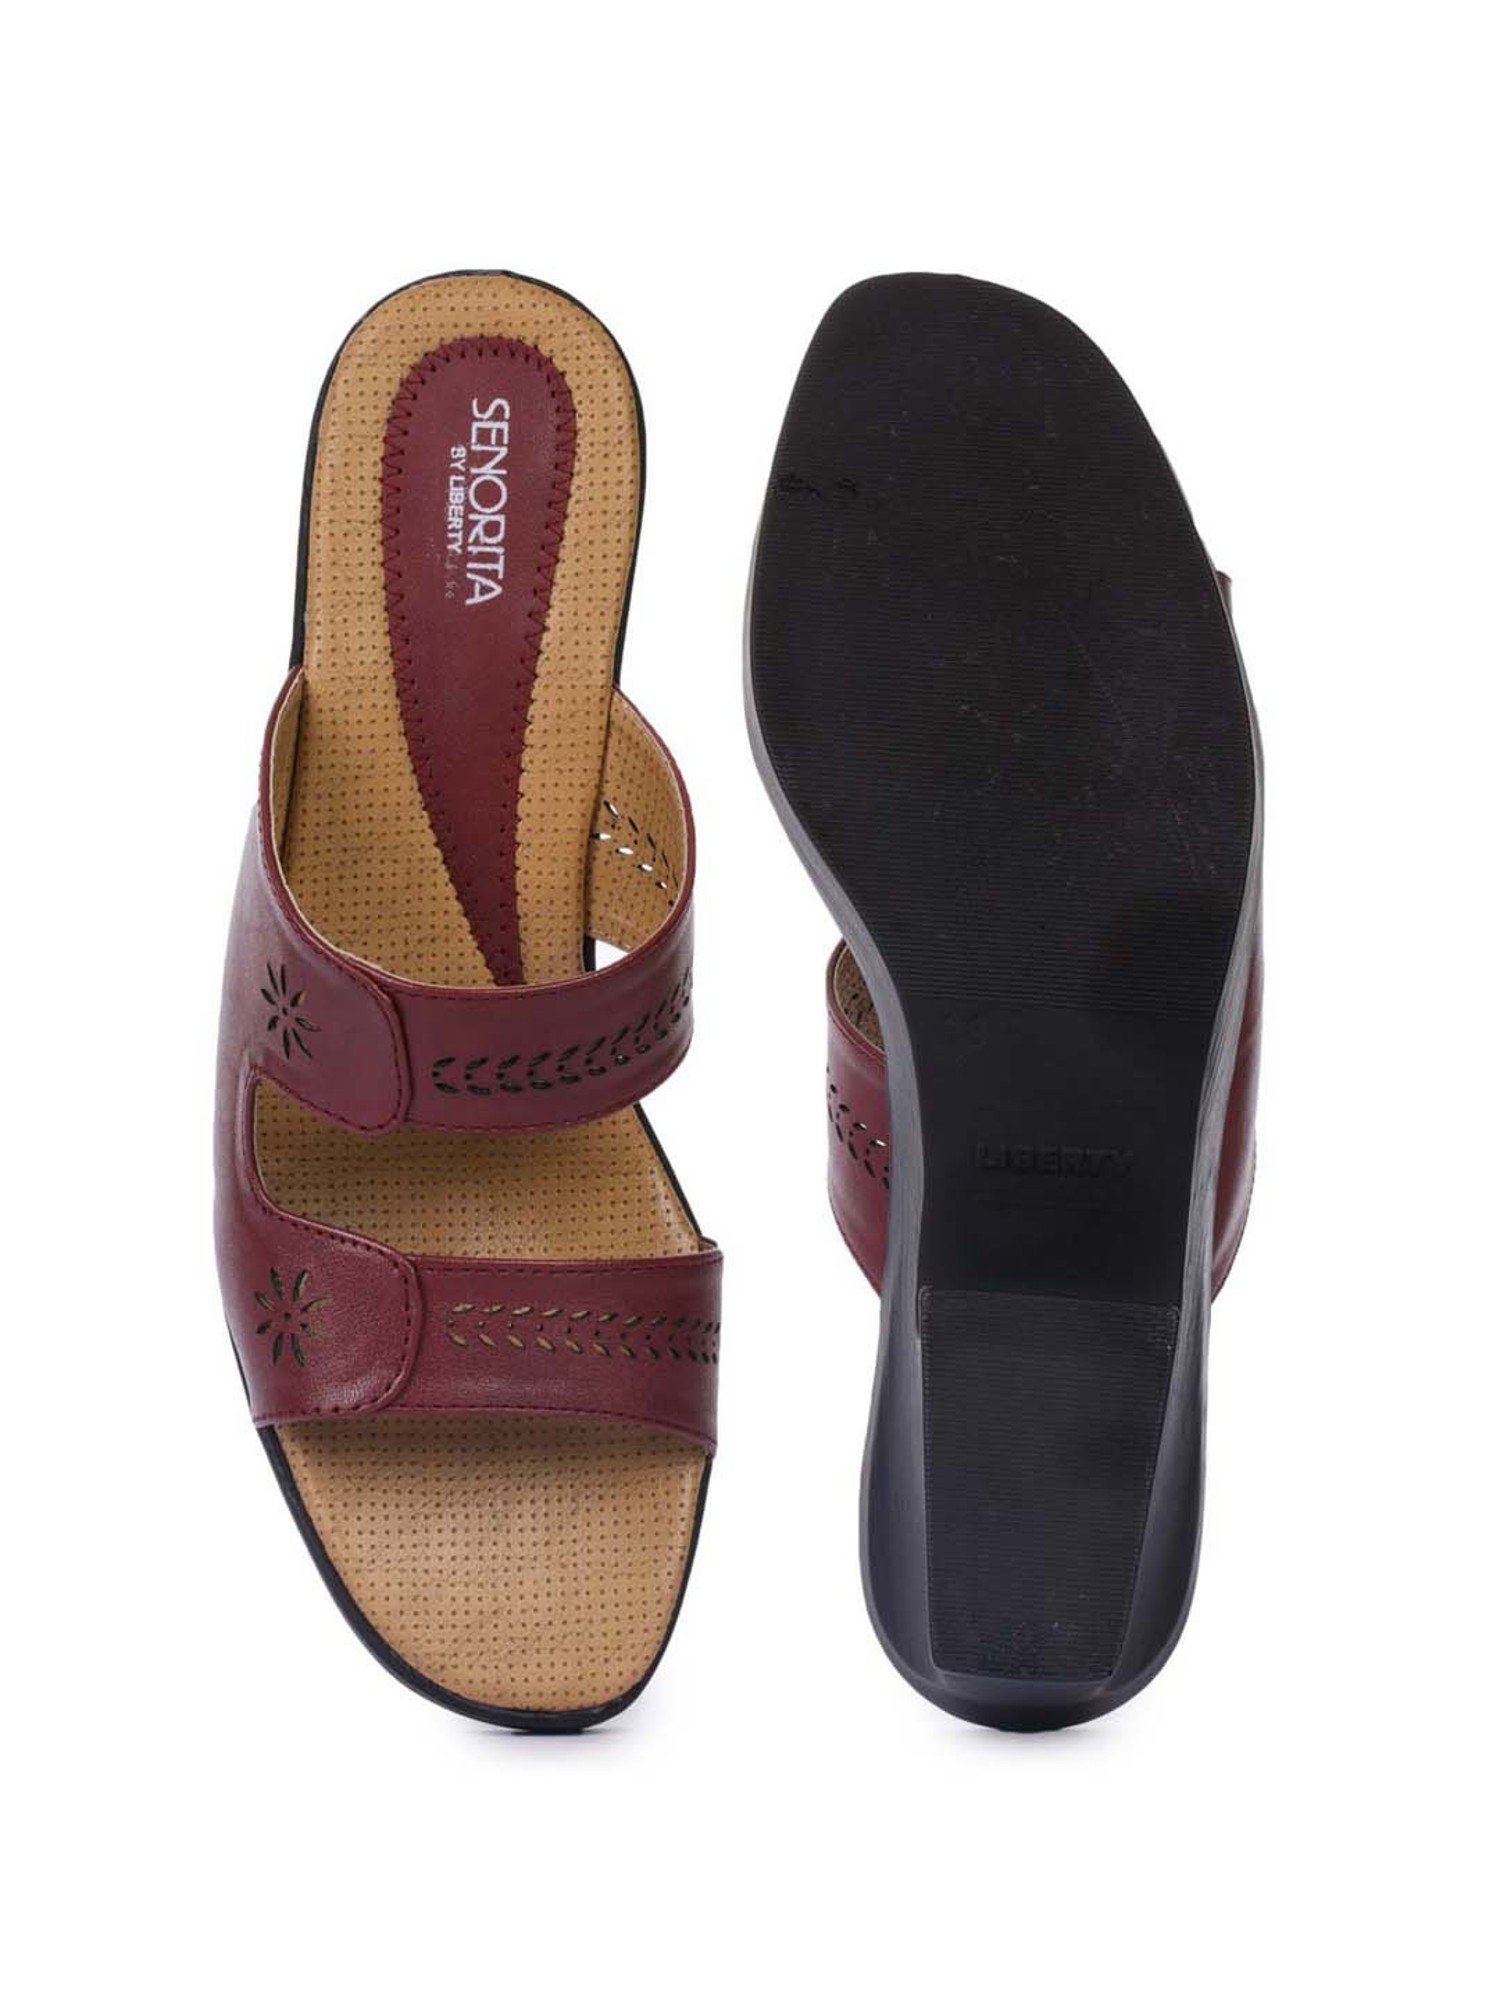 Buy Sandals For Women Online